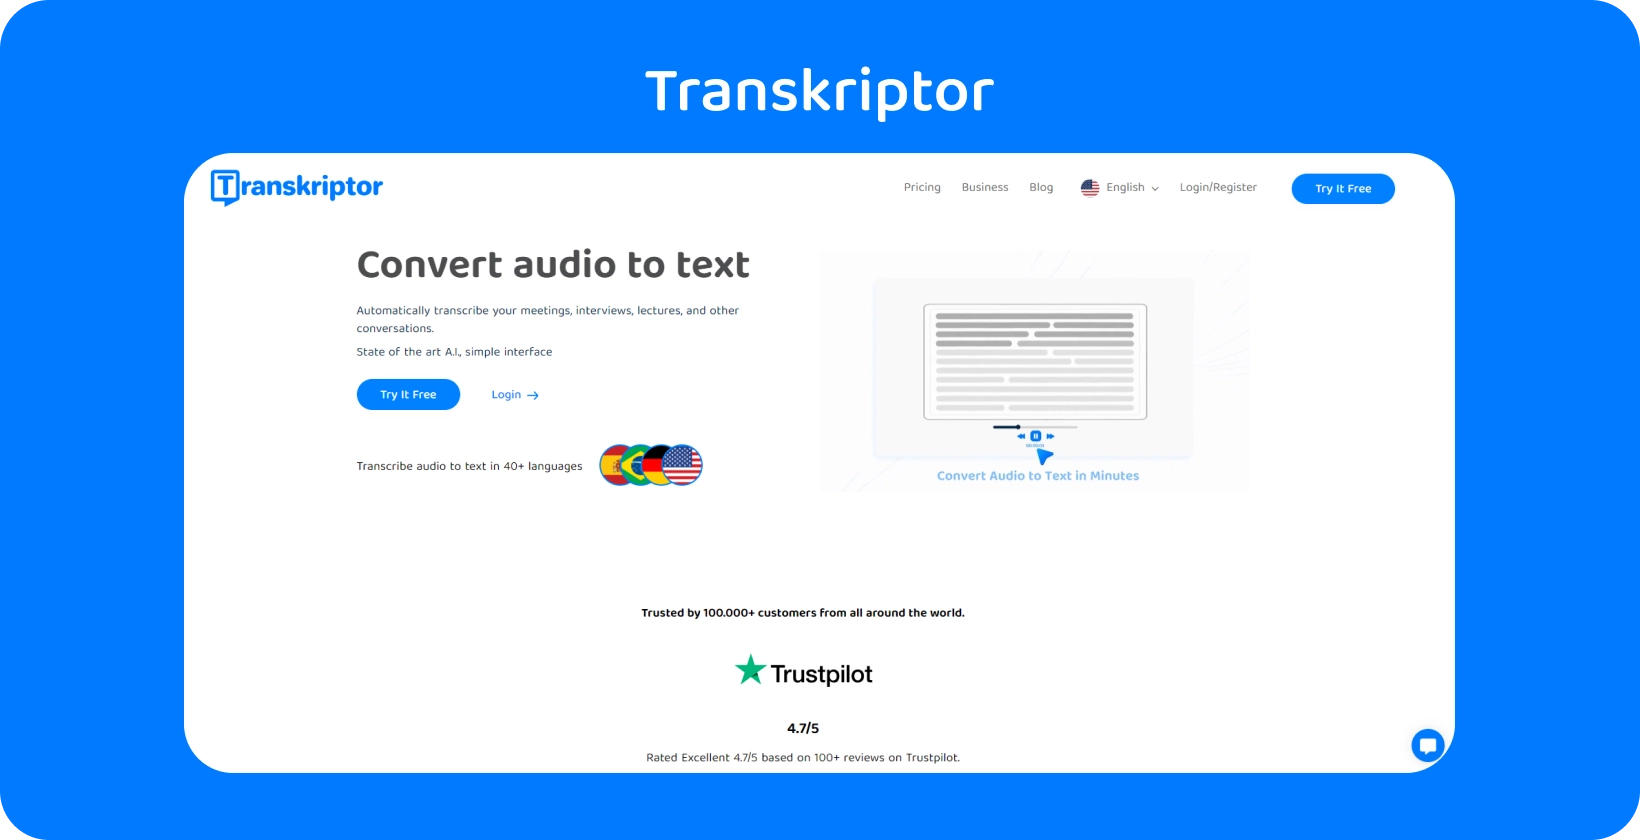 L’interface de Transkriptor présente la fonction d’assistant de réunion, rationalisant la transcription de la recherche qualitative.